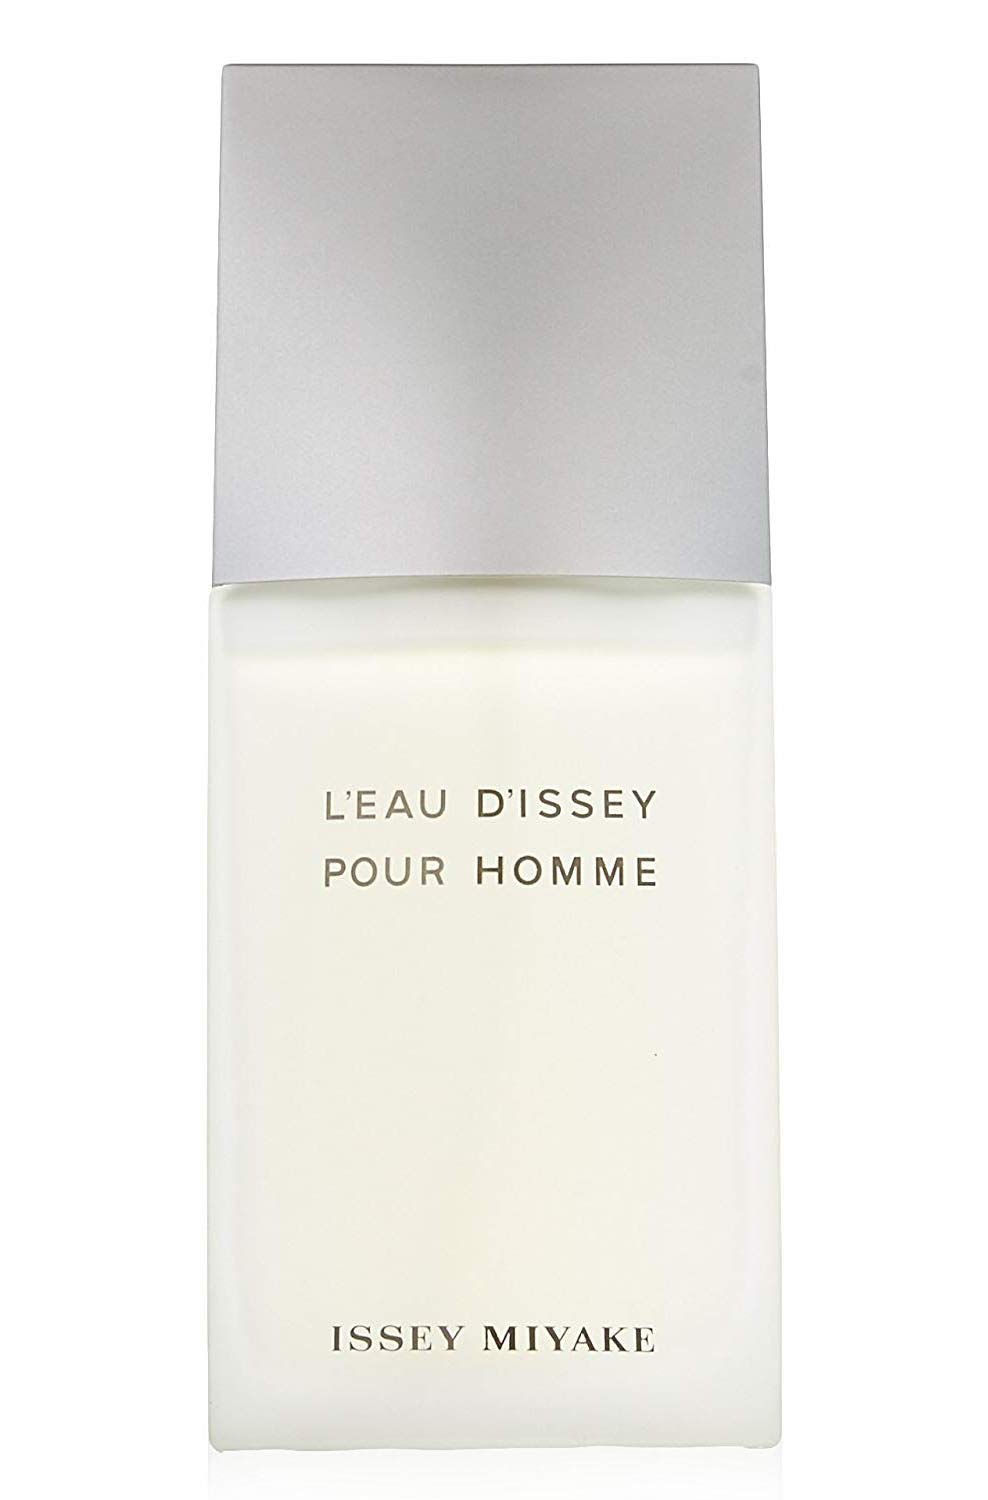 L'eau d'Issey Pour Homme by Issey Miyake 4.2 Fl Oz Eau de Toilette Spray